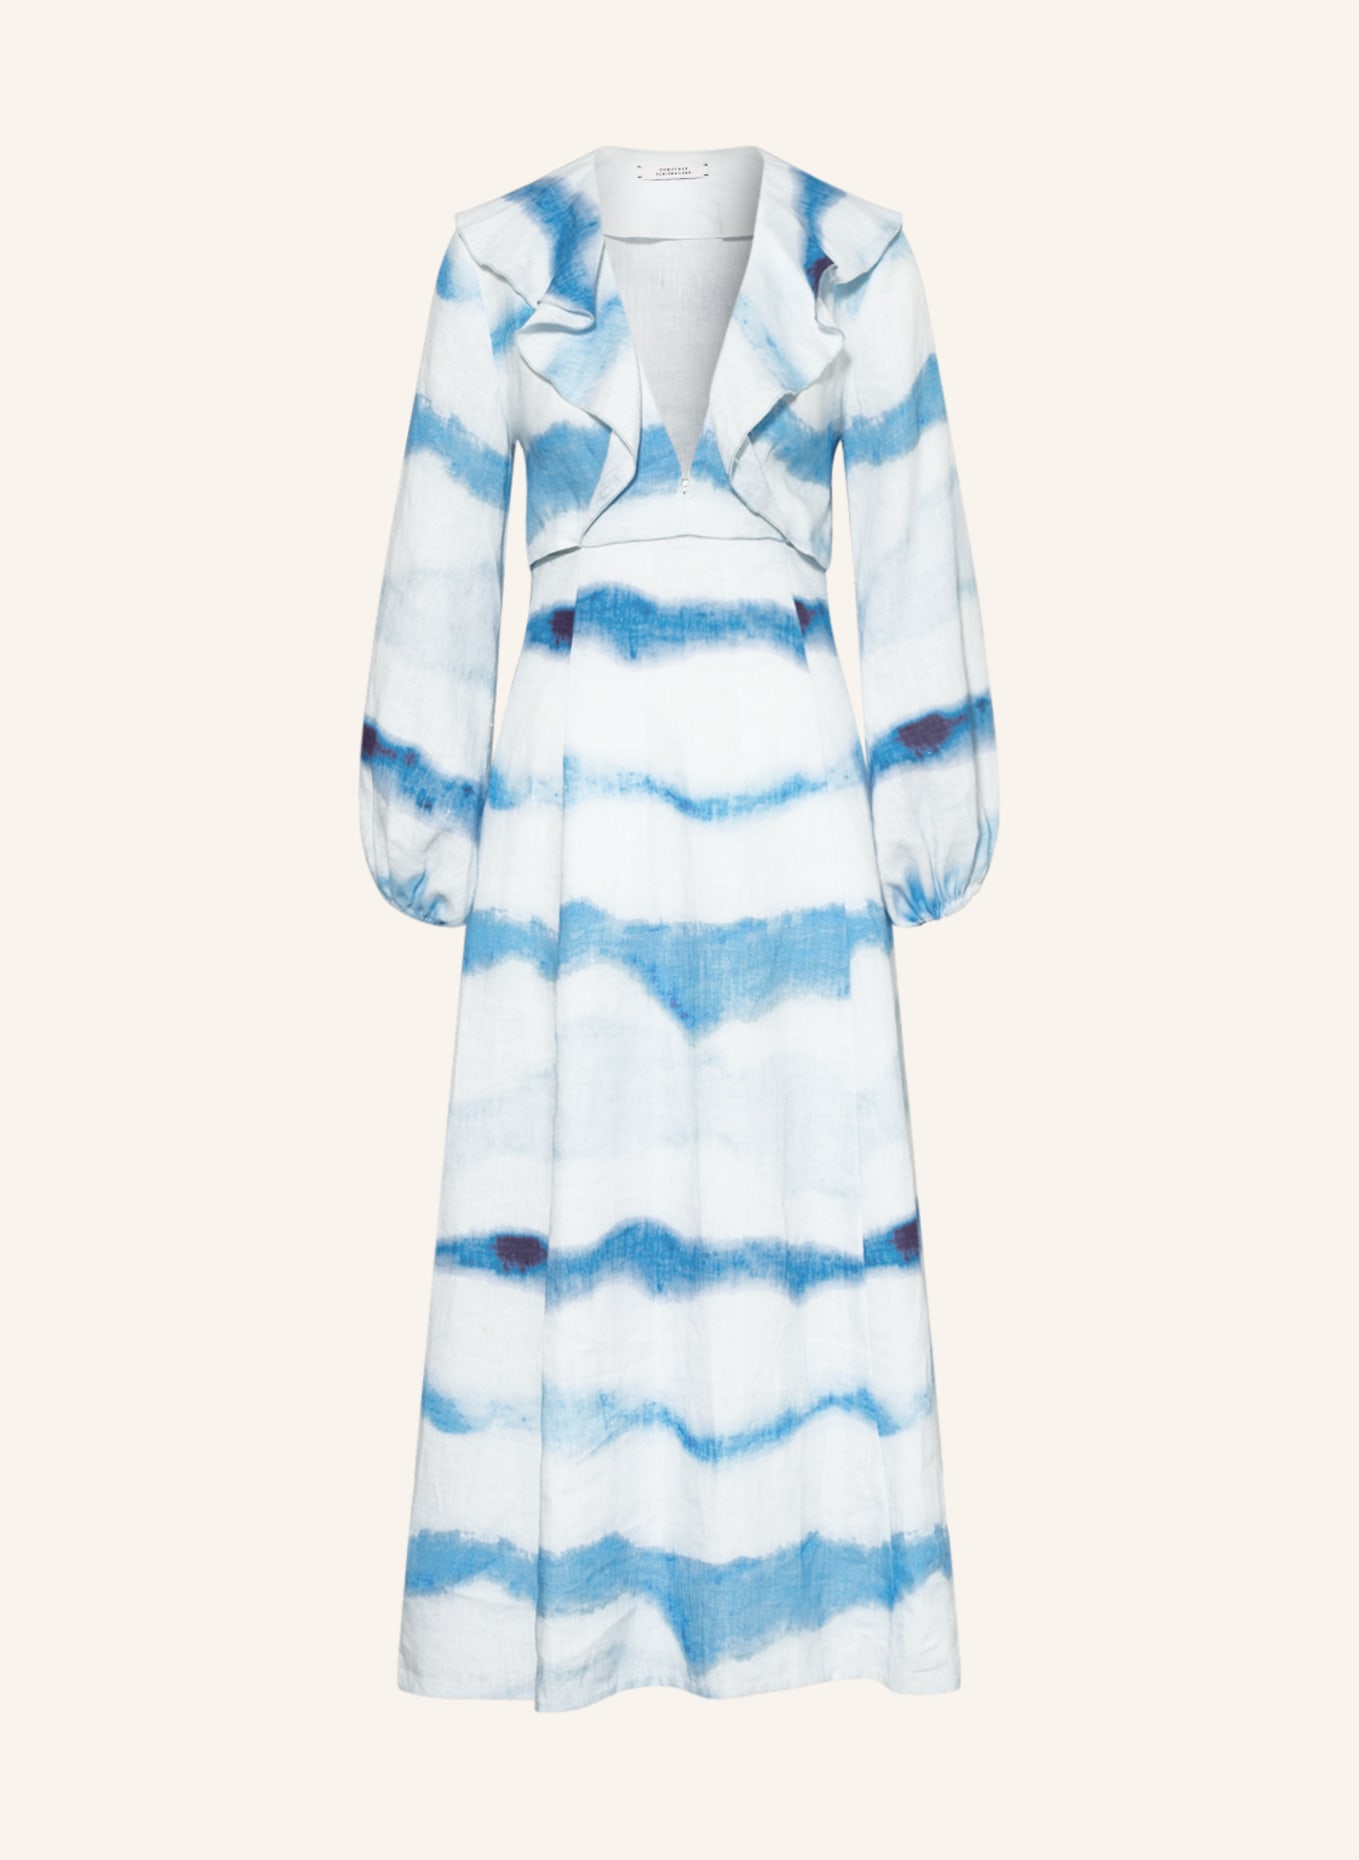 DOROTHEE SCHUMACHER Kleid mit Cut-outs und Volants, Farbe: WEISS/ HELLBLAU (Bild 1)